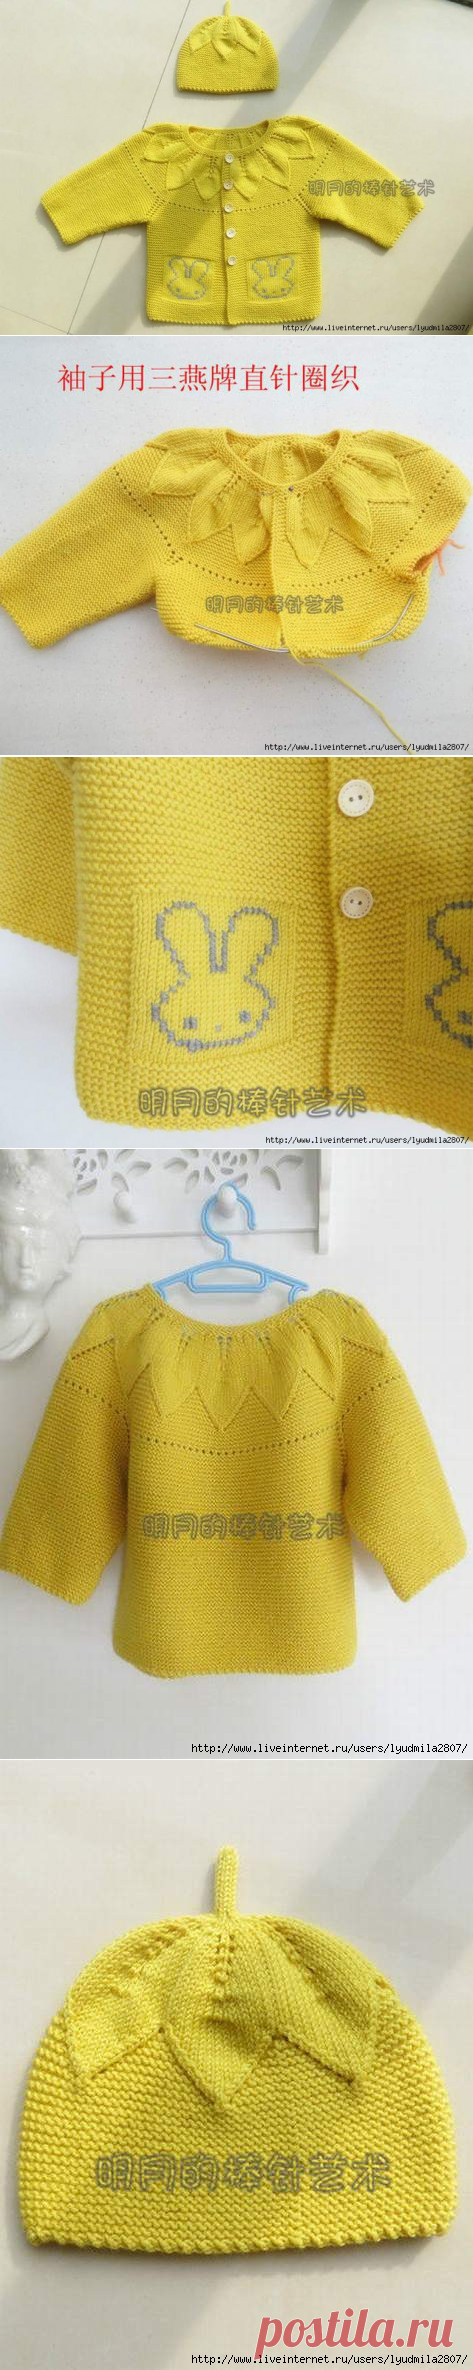 Кофта на кокетке и шапочка для новорожденных с китайского сайта